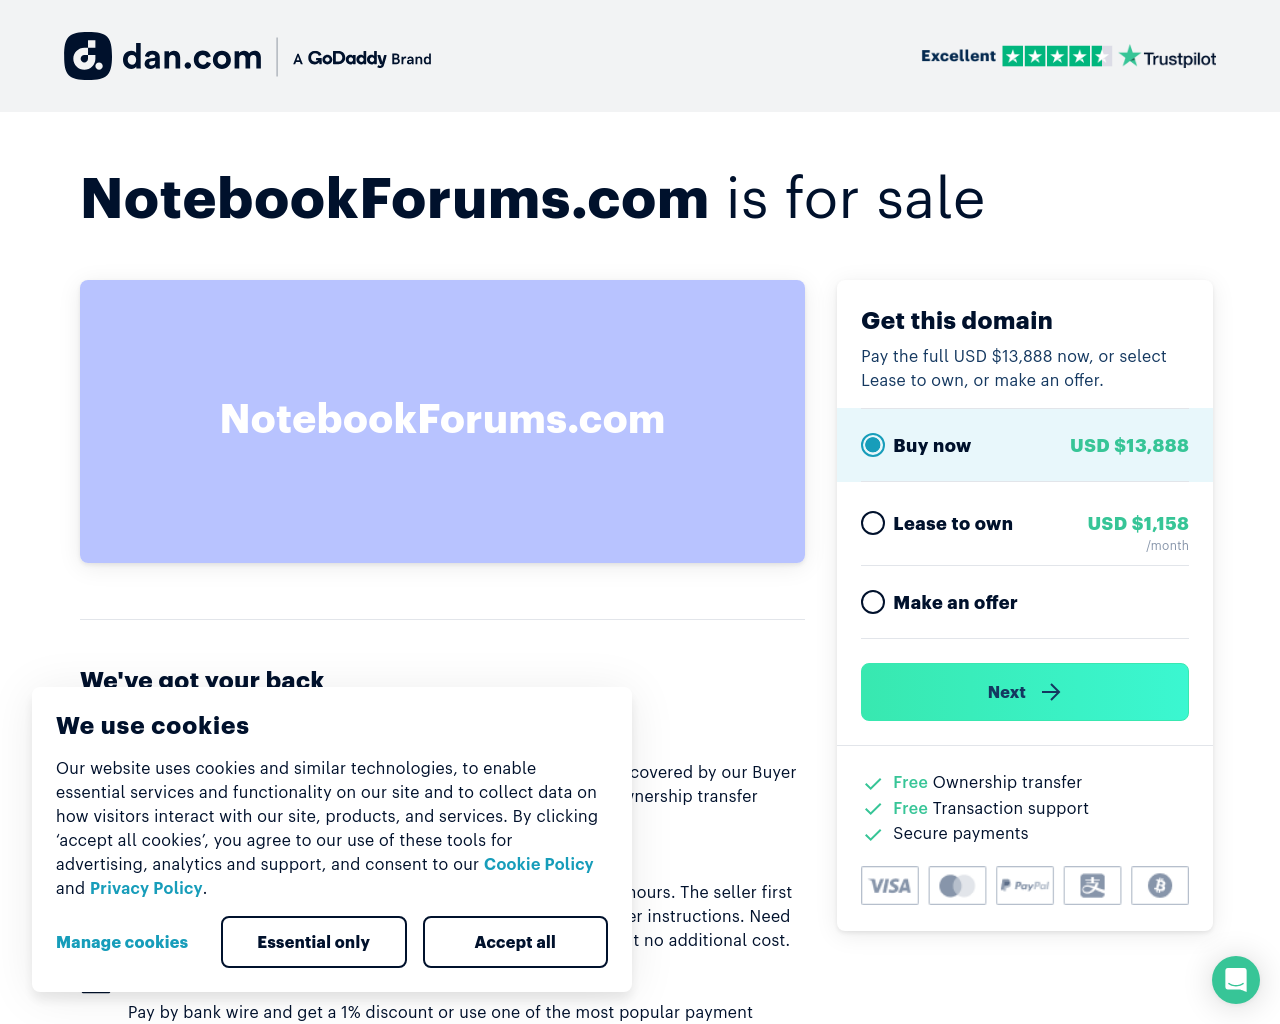 notebookforums.com